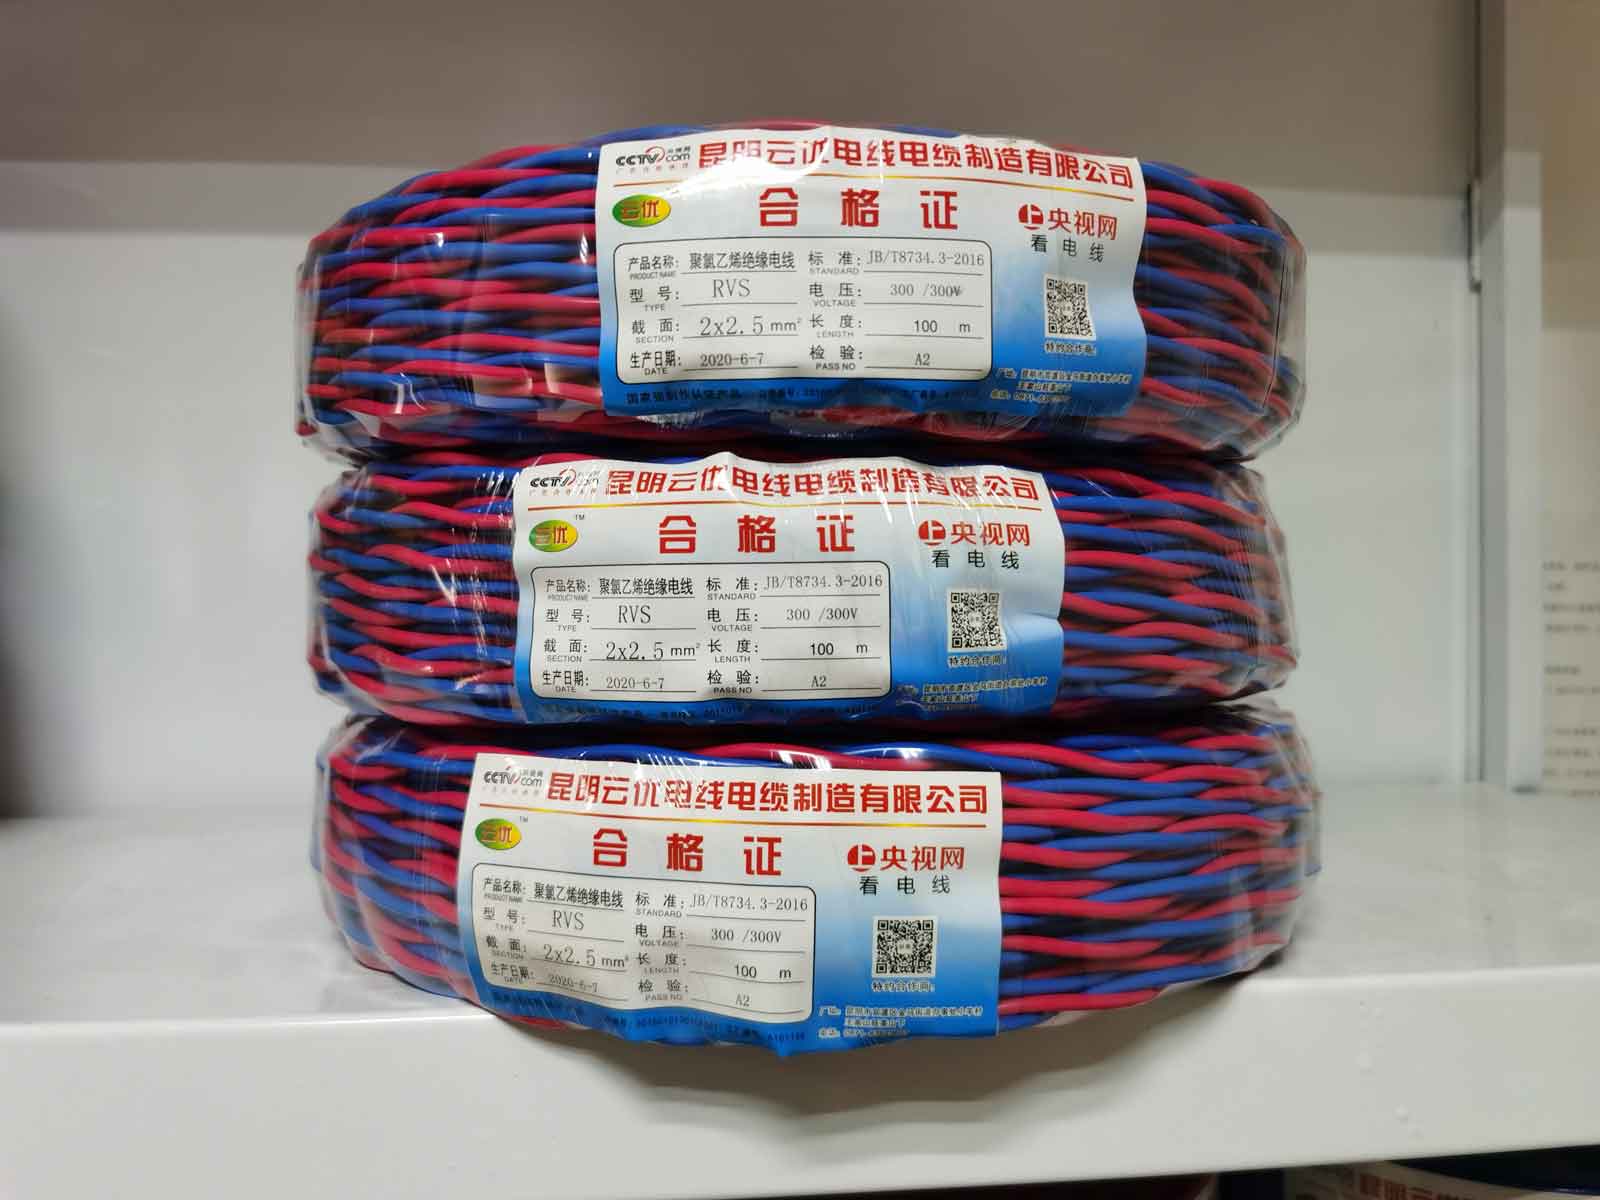 电线电缆产品的主要分类为哪些？